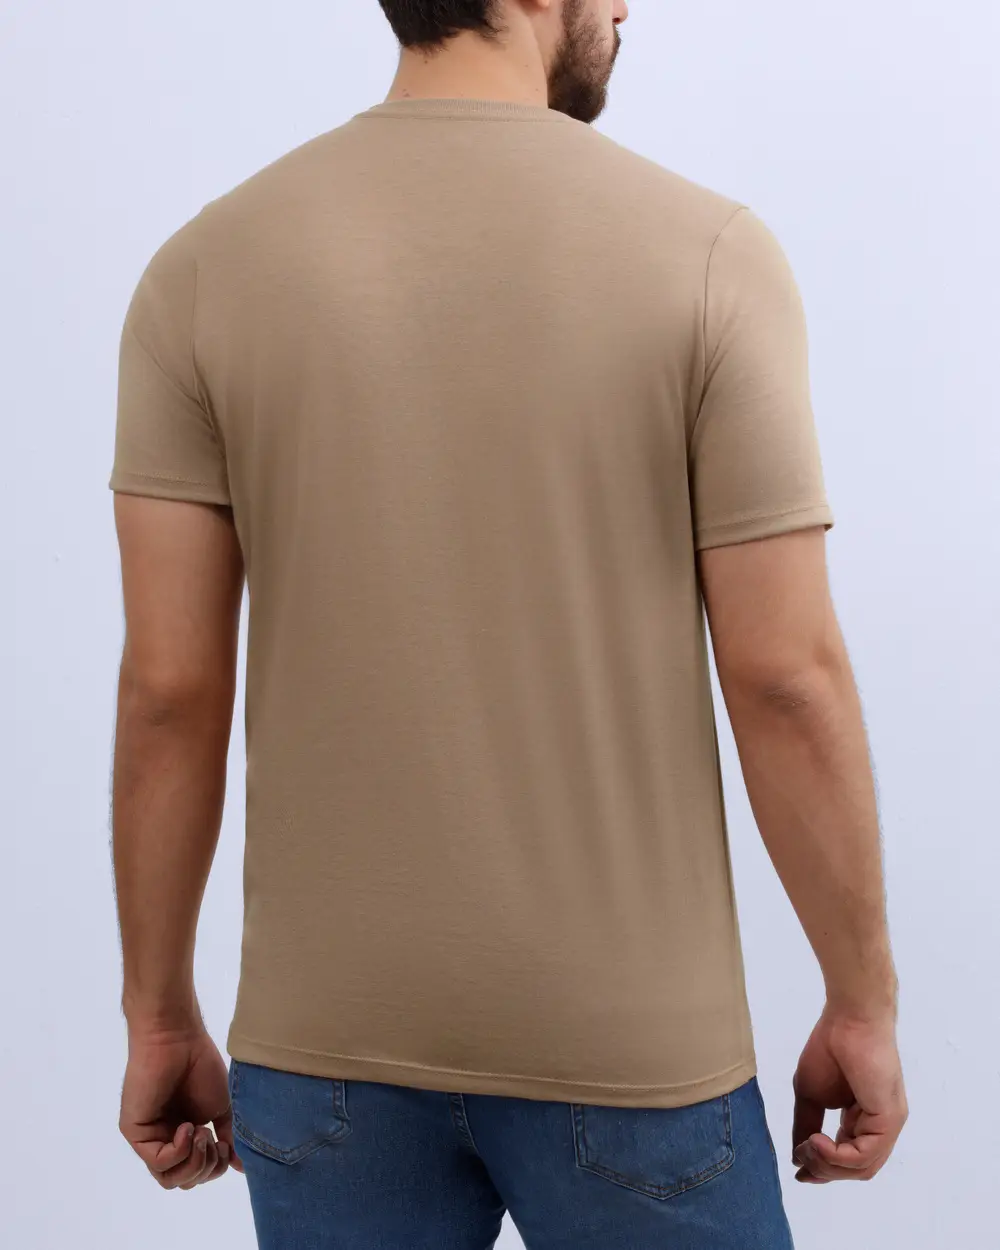 Camiseta cuello v lisa manga corta color cafe